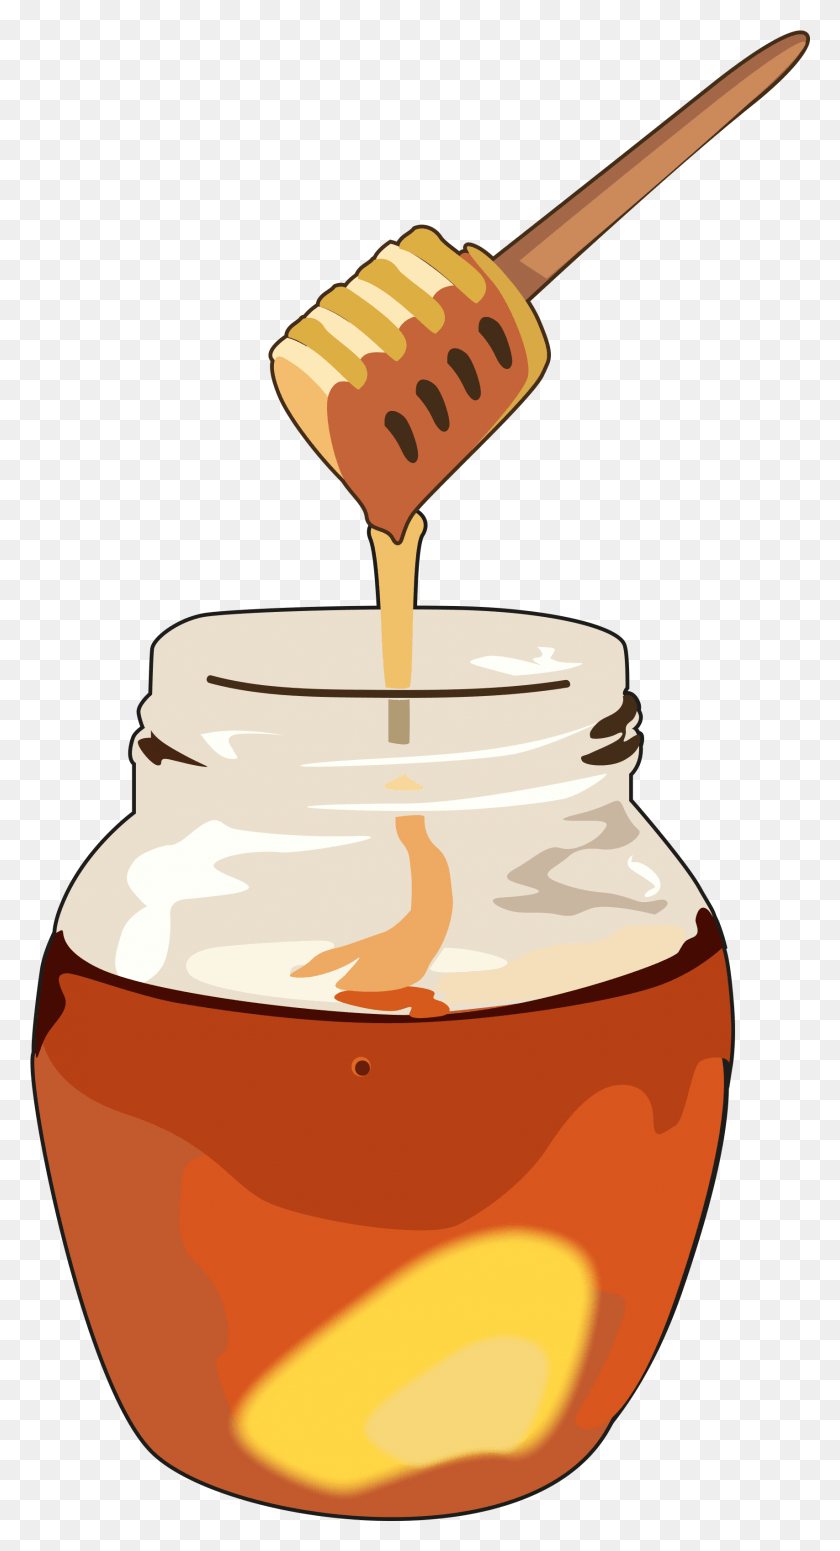 1707x3264 Dibujo De Una Miel Dibujo De Una Miel, Jar, Food, Honey Hd Png